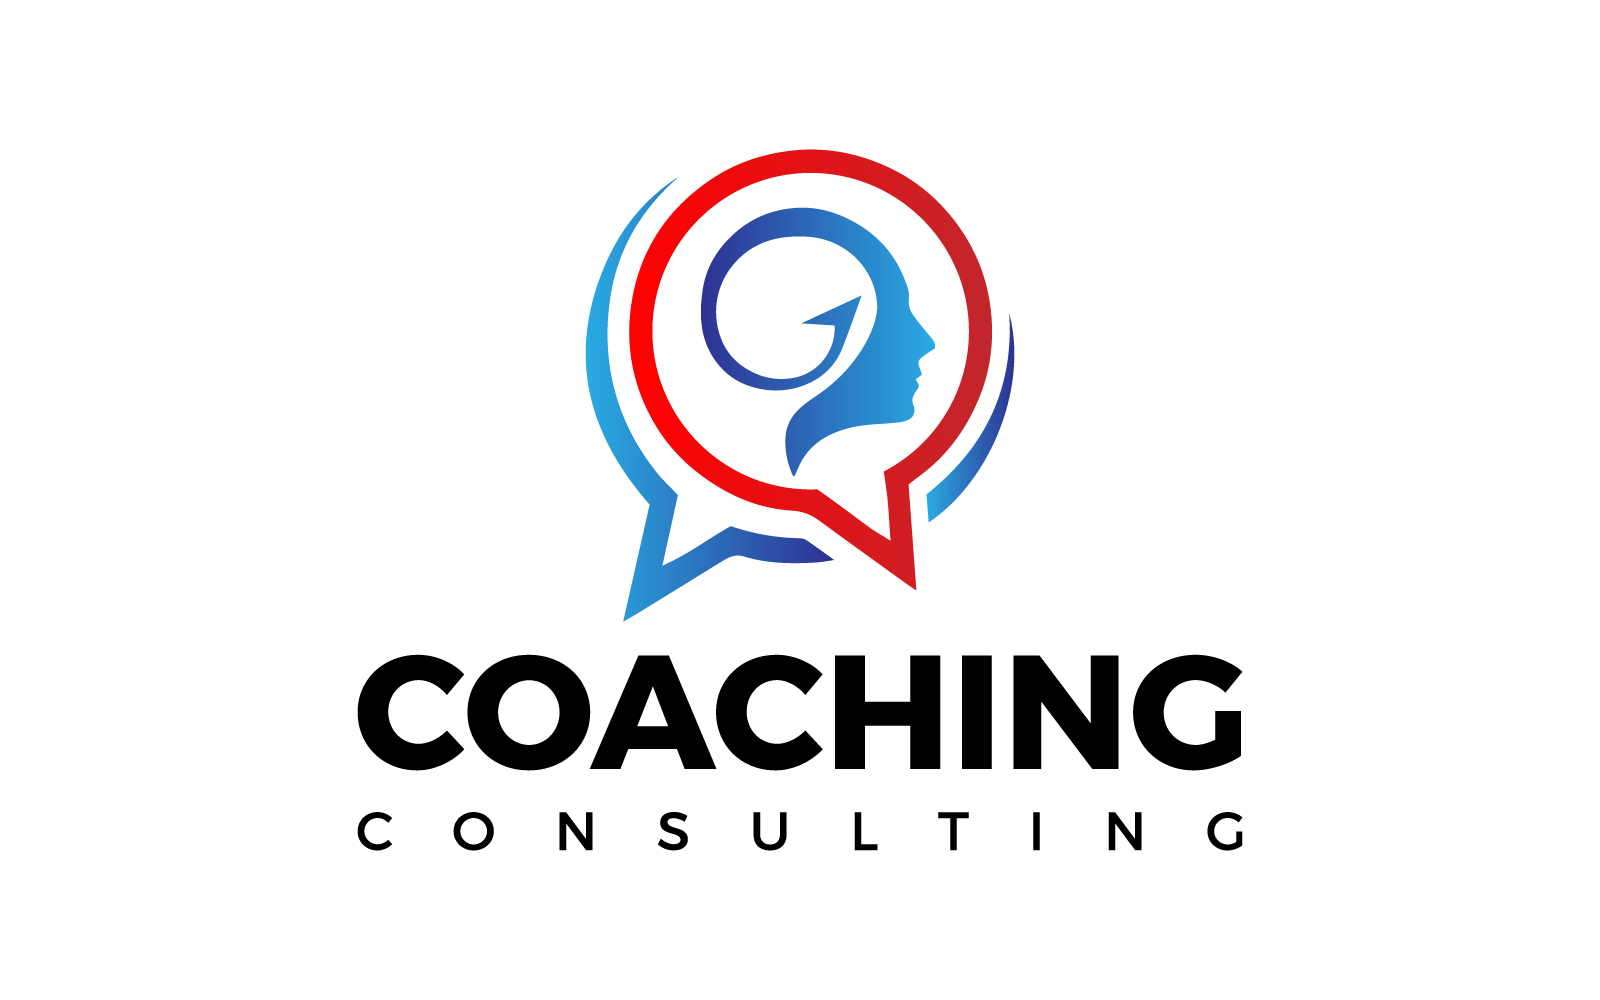 Create a logo for a life coaching business | Logo design contest | 99designs